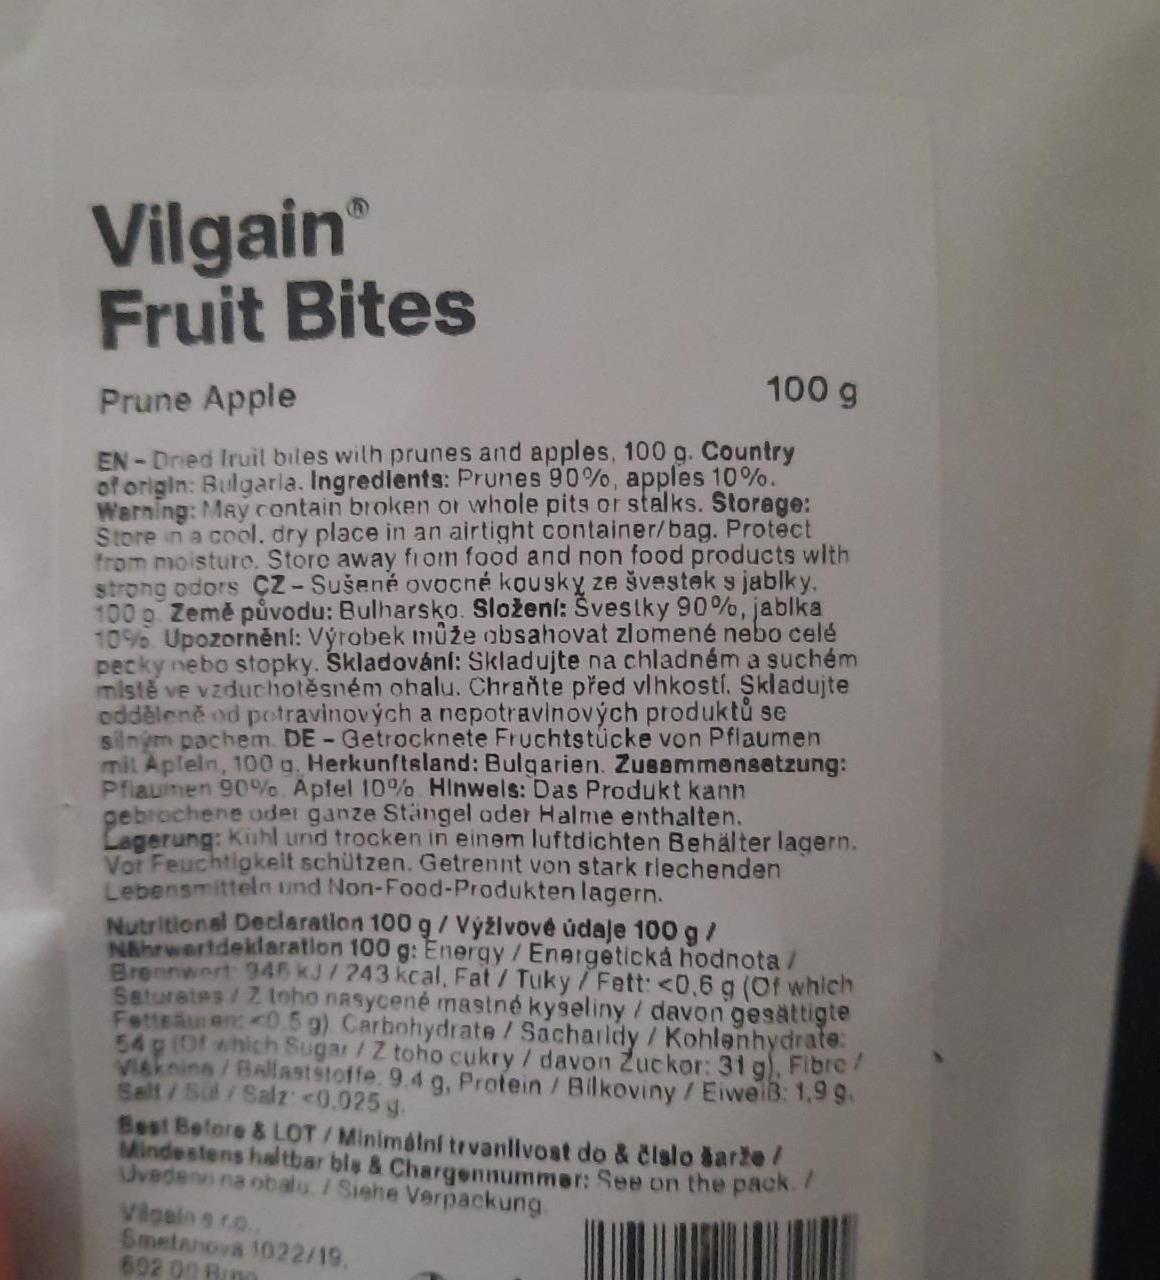 Fotografie - Fruit Bites Prune Apple Vilgain